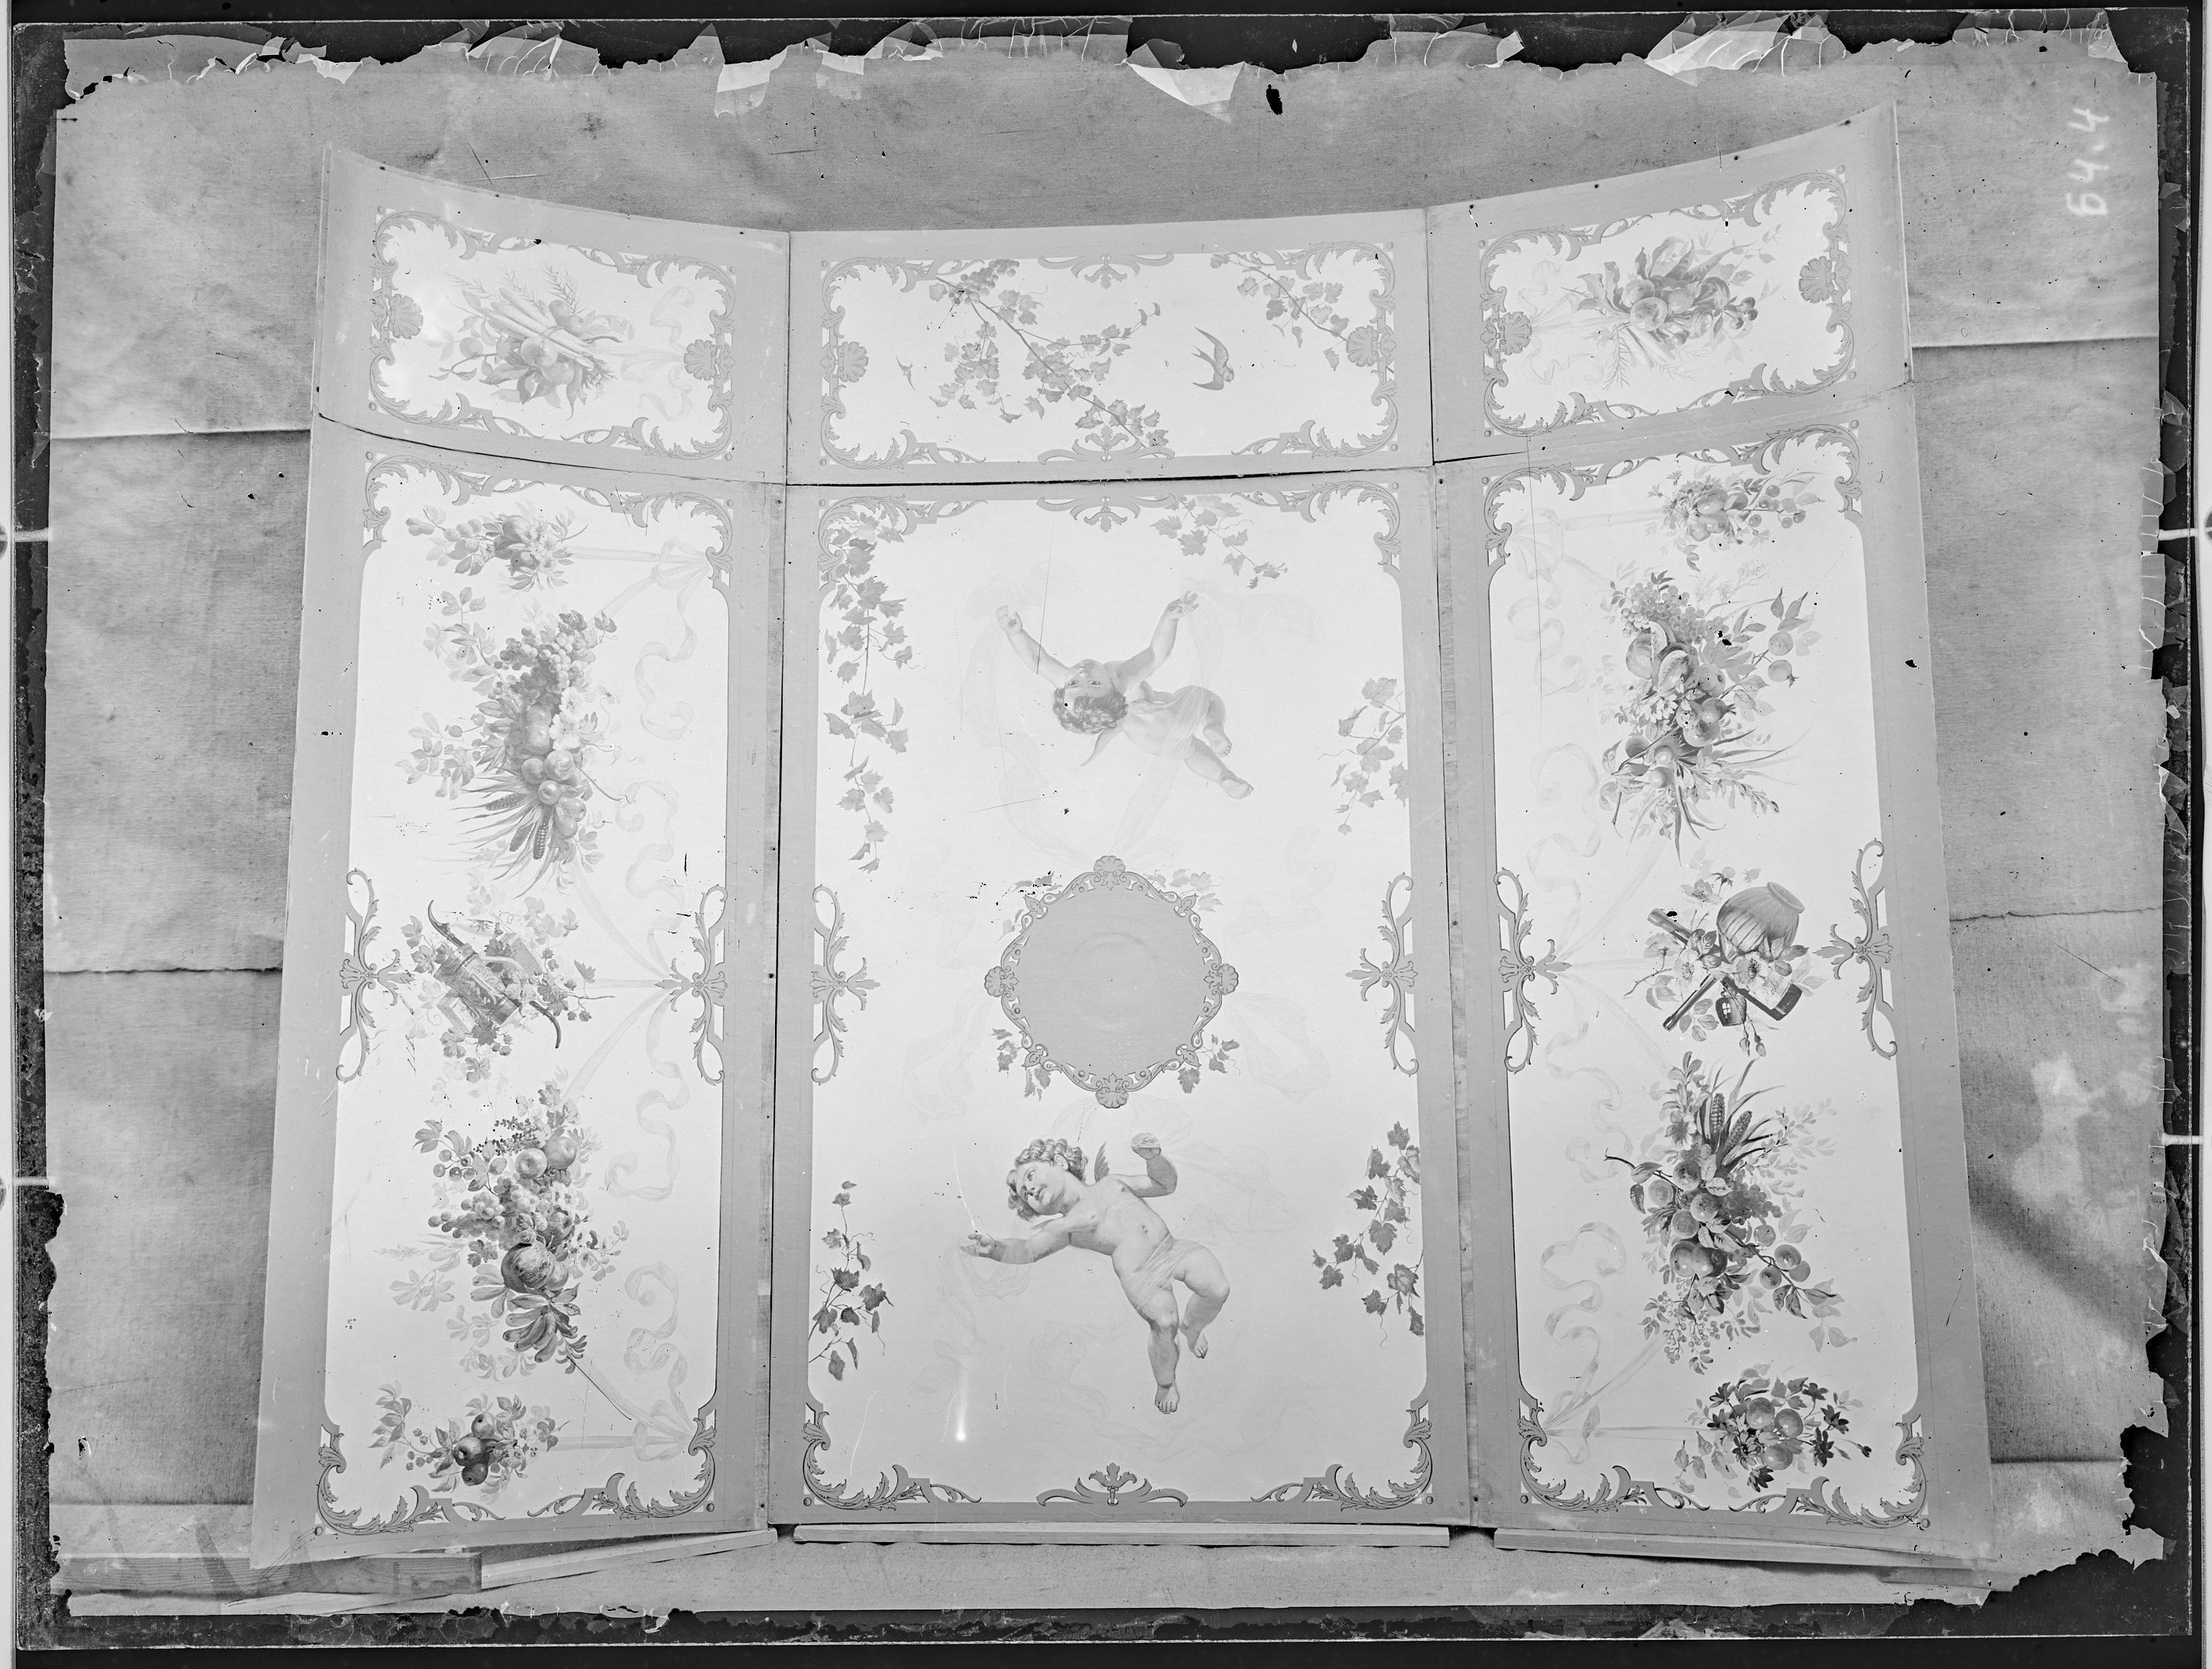 Fotografie: Deckensegment vermutlich von Salonwagen oder Speisewagen, um 1900? (Verkehrsmuseum Dresden CC BY-NC-SA)